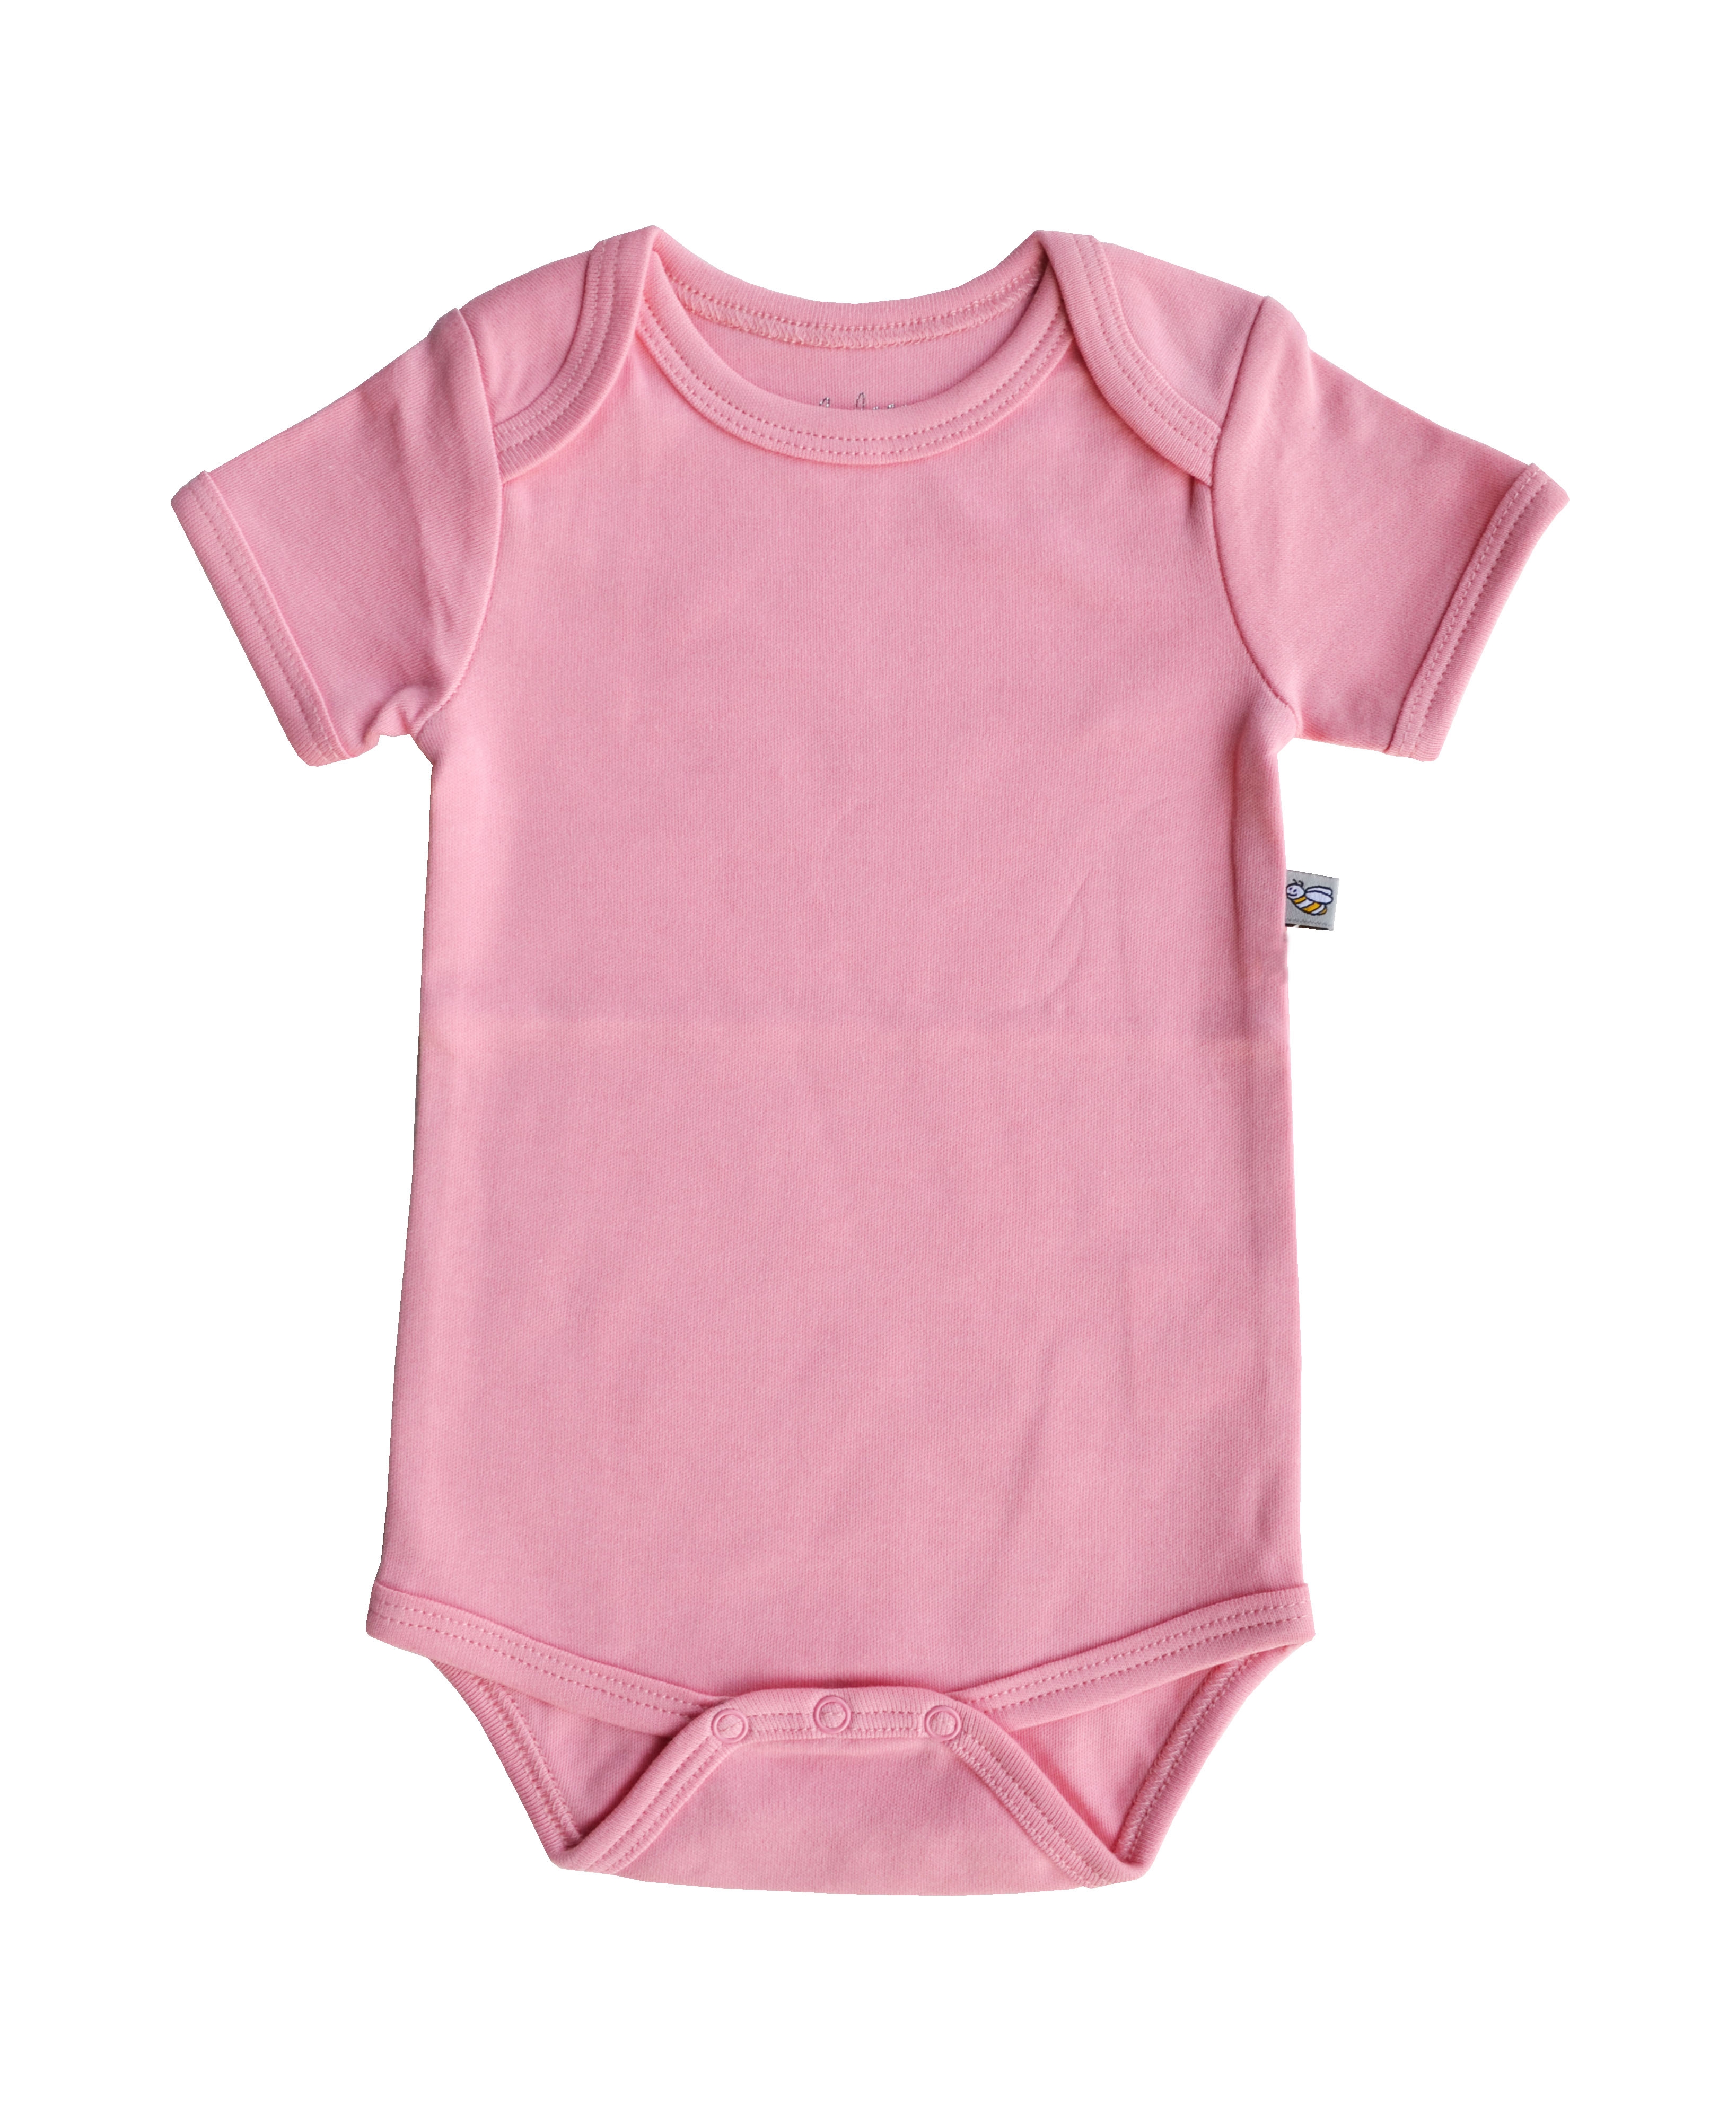 Babeez | L.Pink Baby Body (100% Cotton Interlock Biowash) undefined